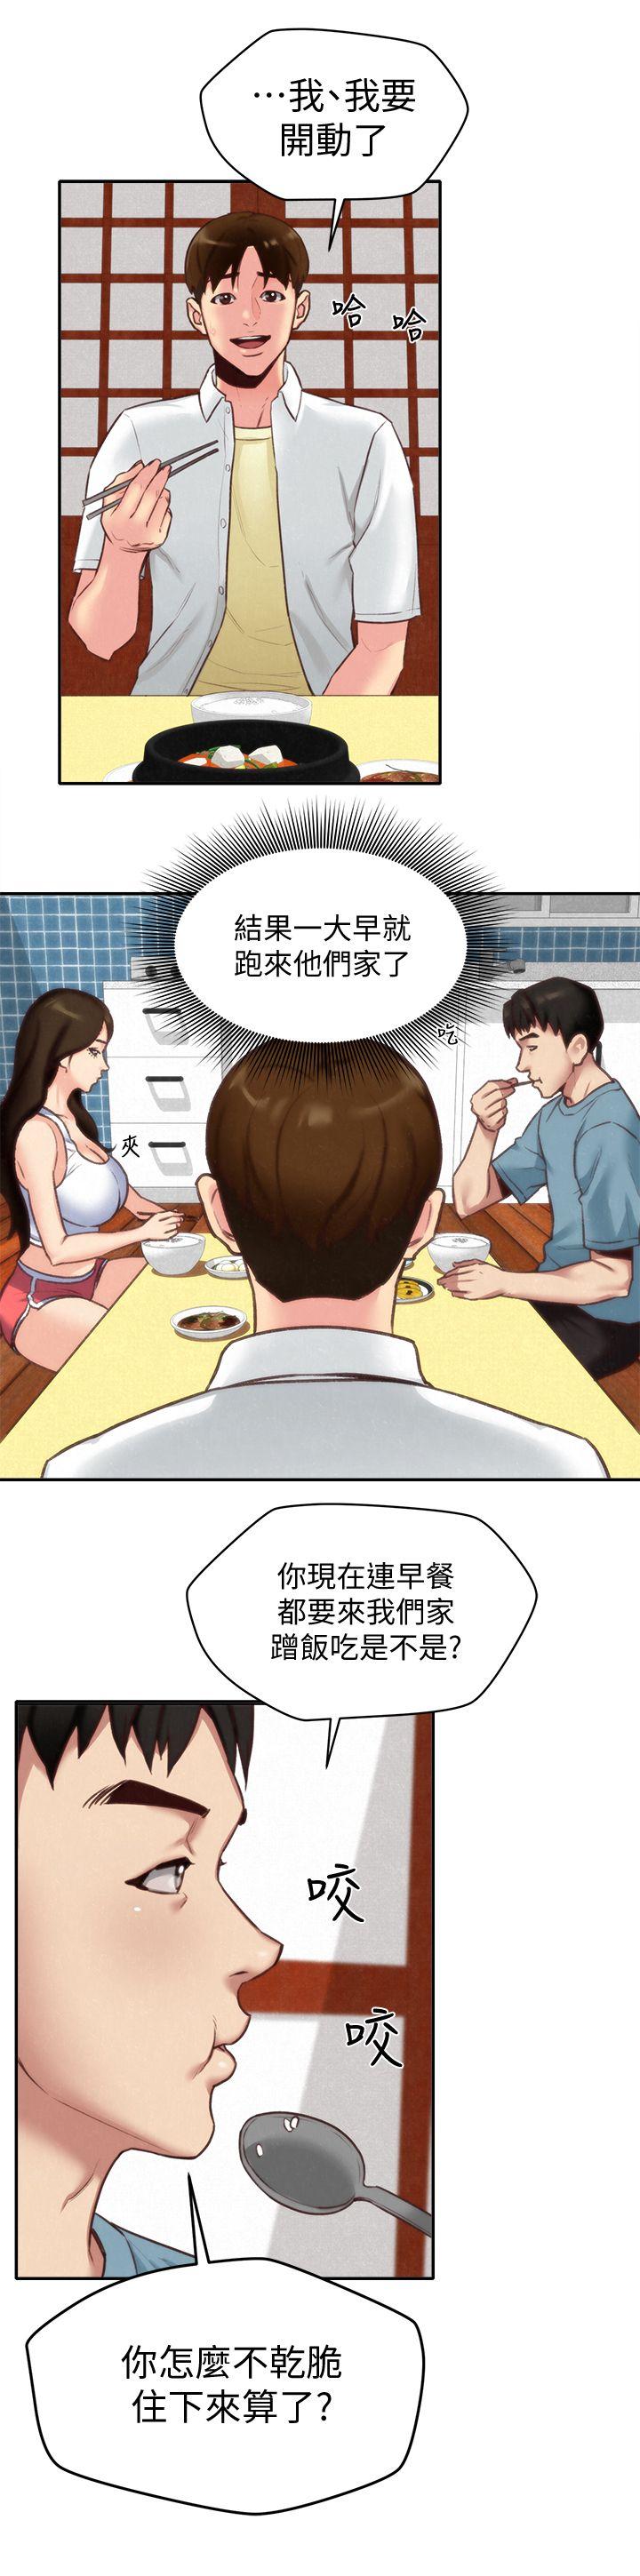 《朋友的姐姐》漫画 第4话-智妤姐有男友了?!